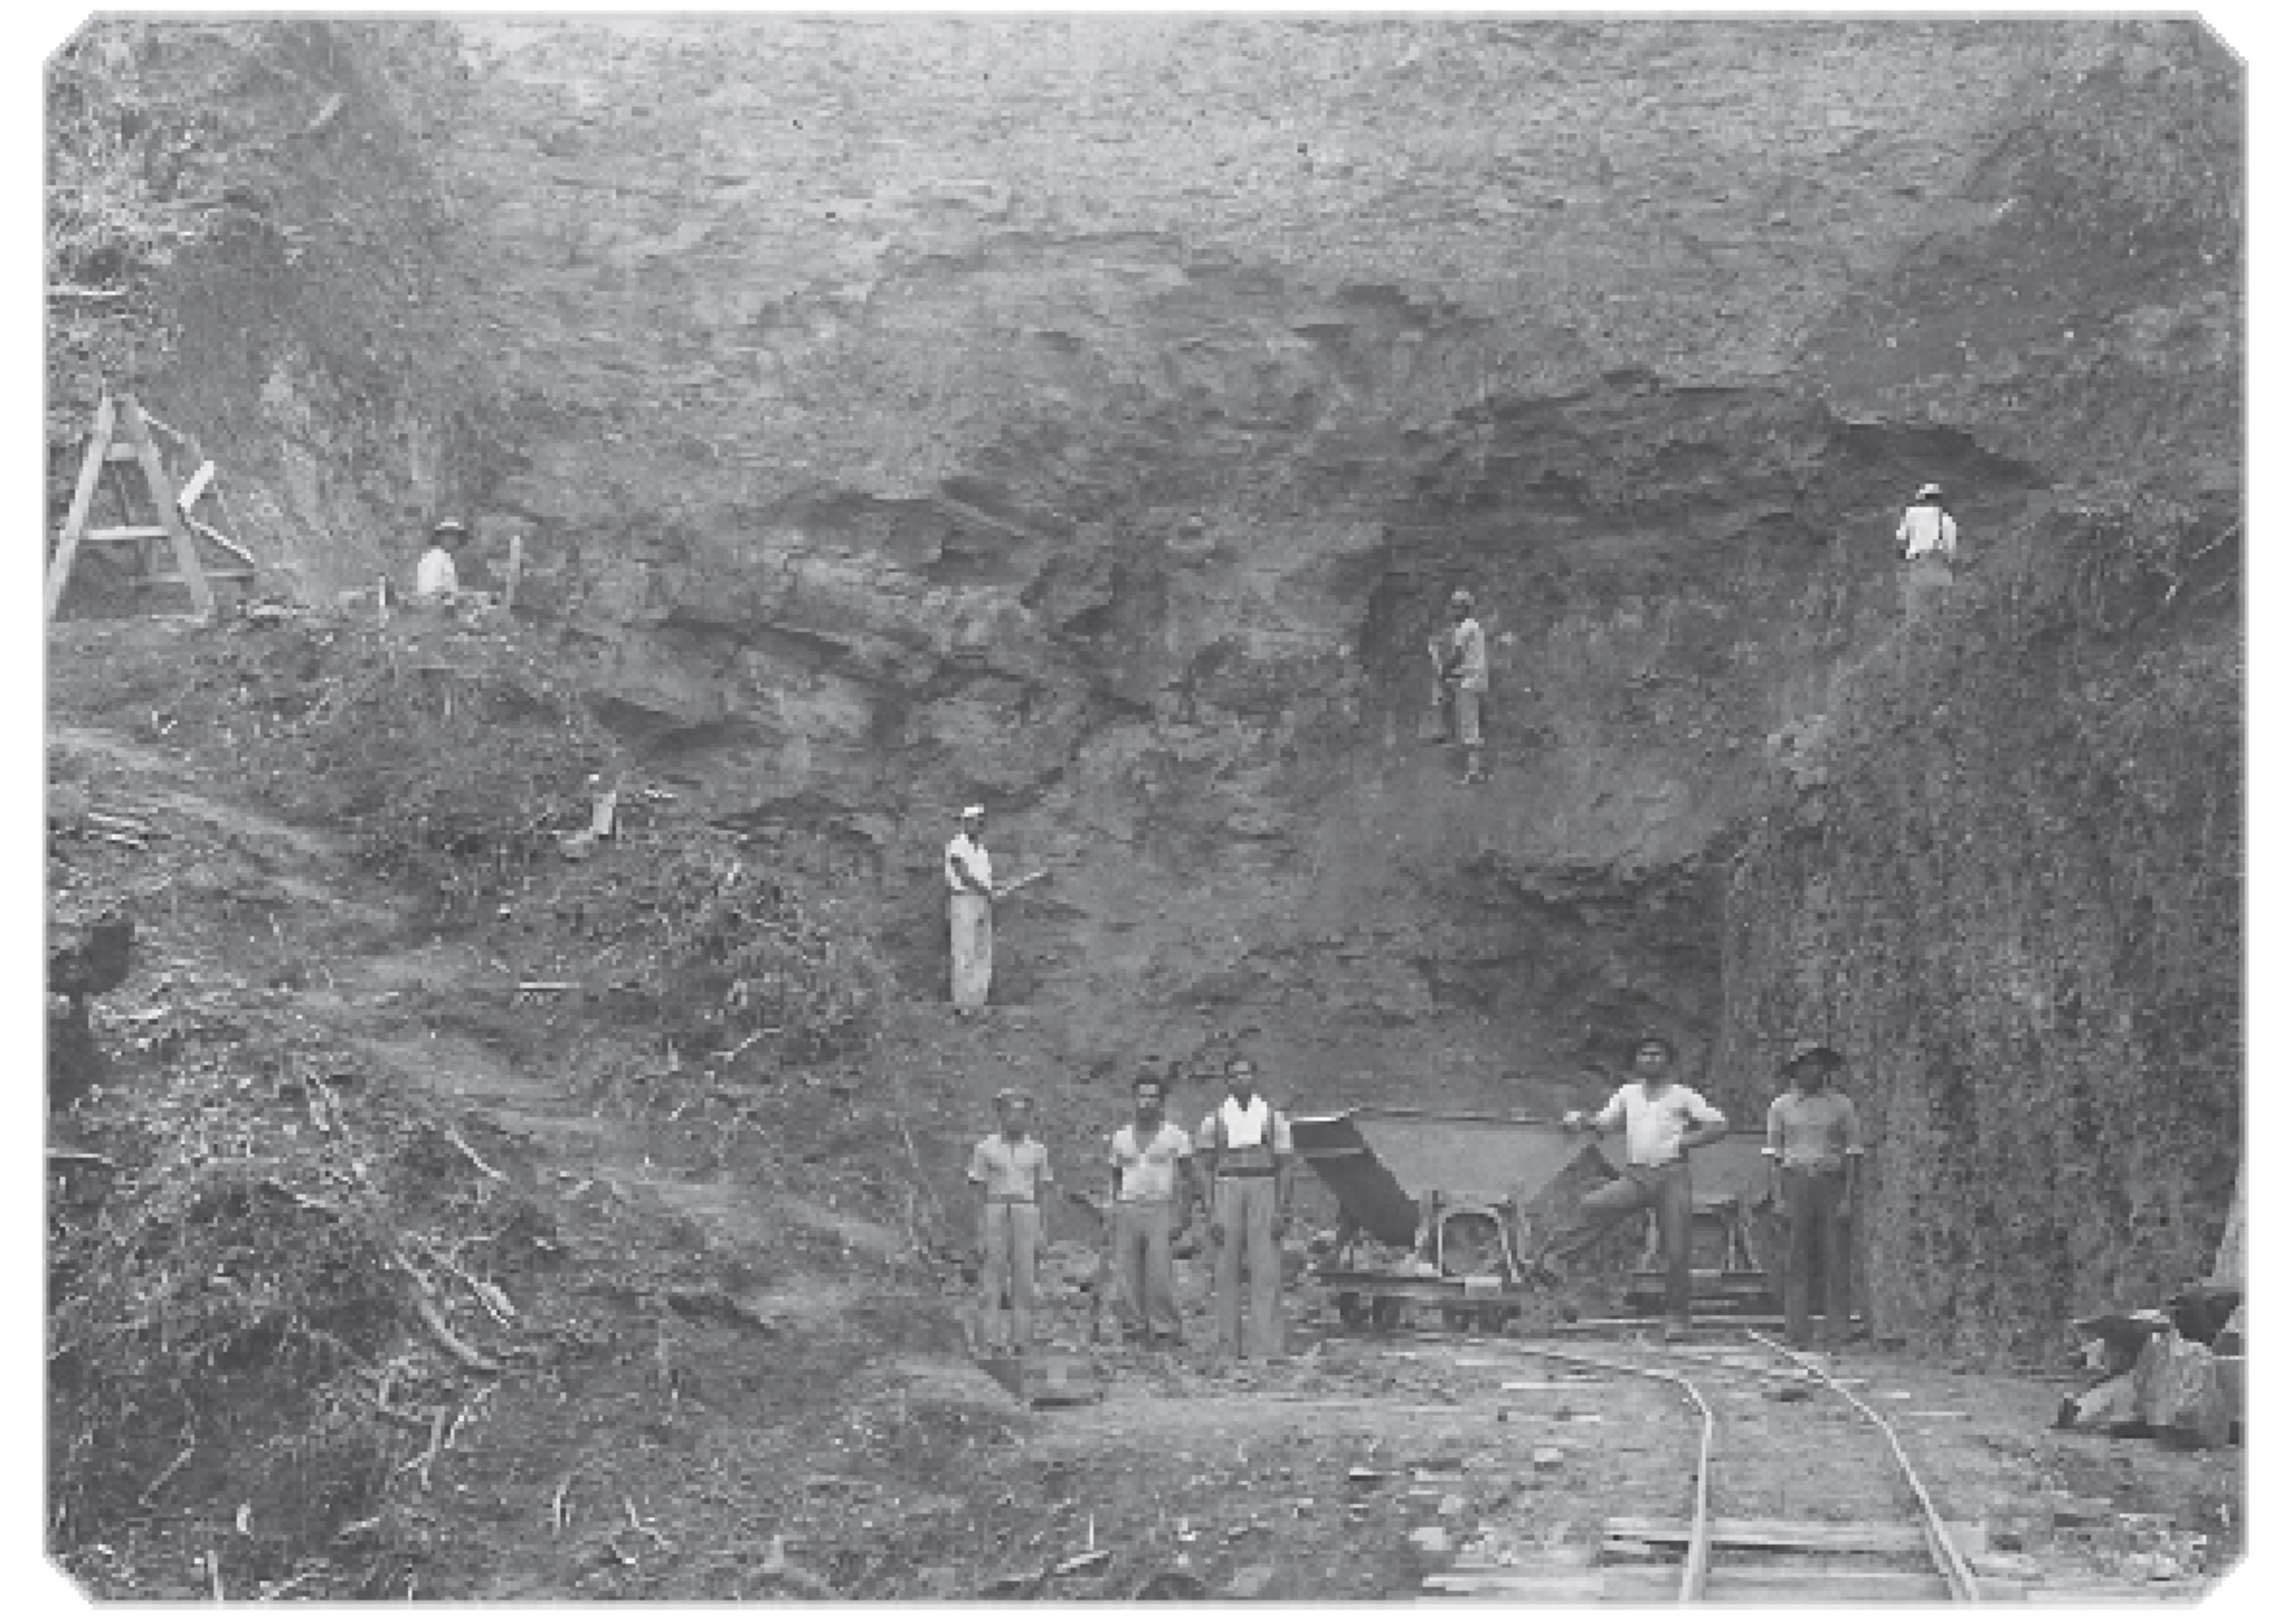 Foto dos serviços rudimentares de emboque de túnel - na década de 1930.